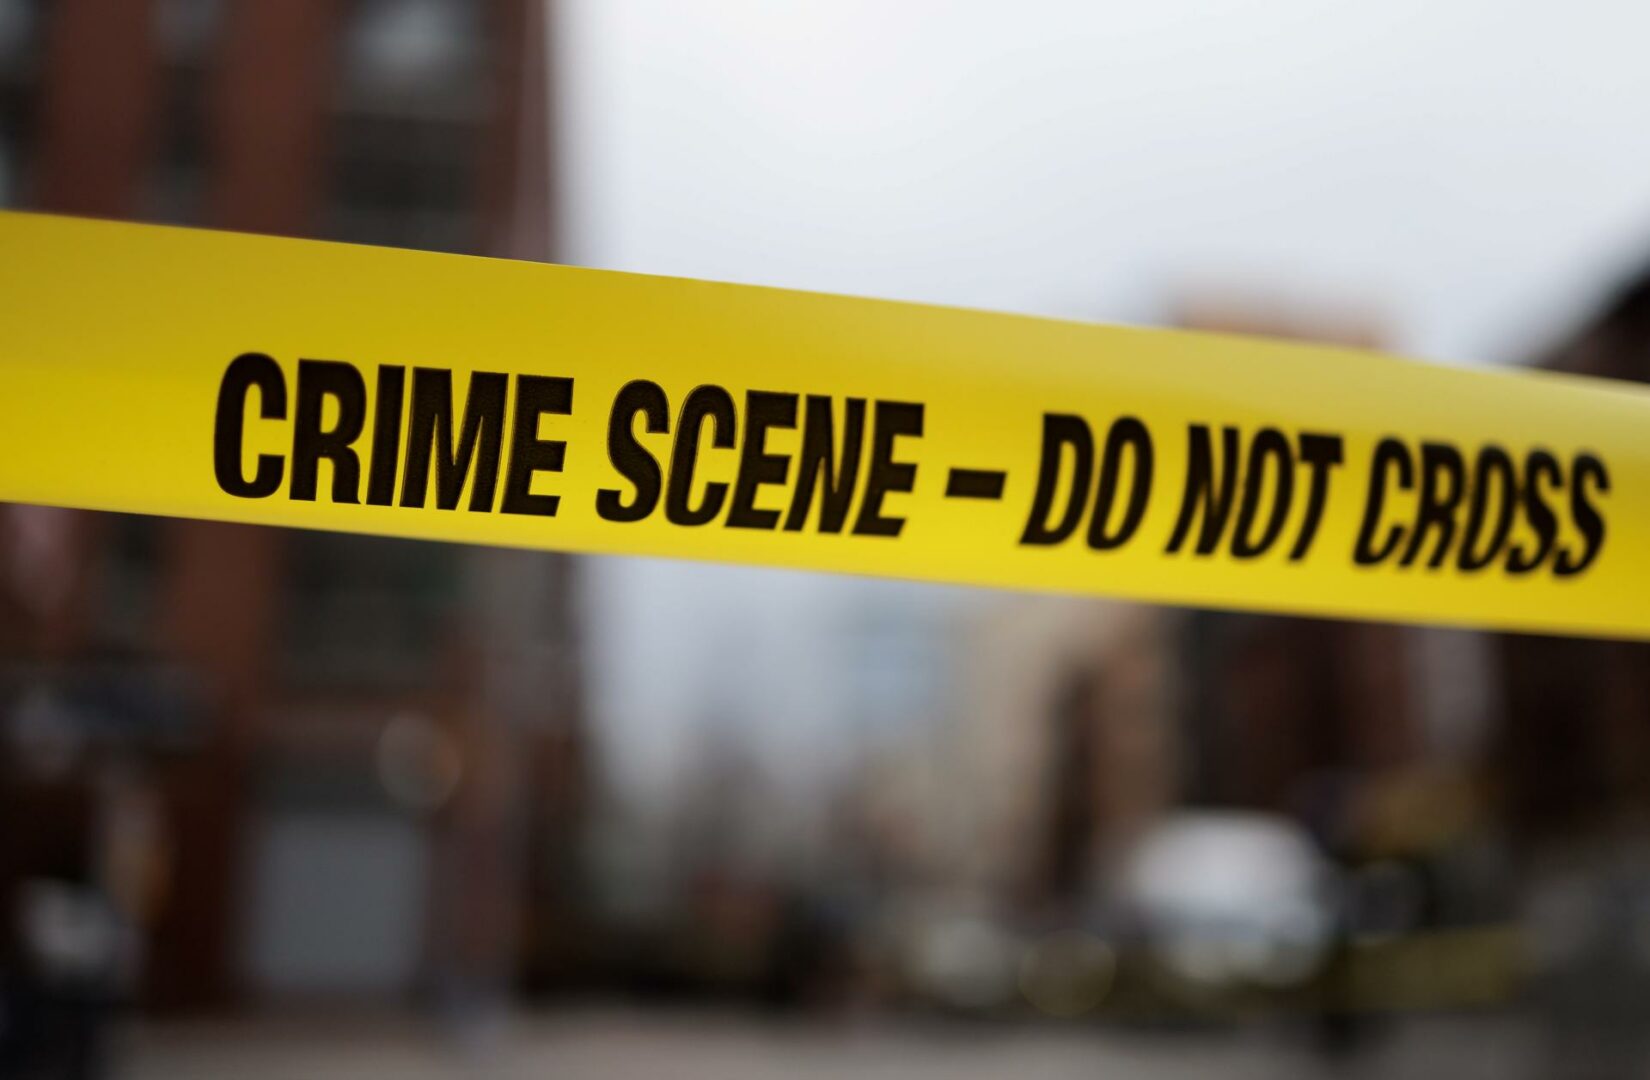 Investigan posible terrorismo doméstico en choque de vehículos en Nueva York en Año Nuevo